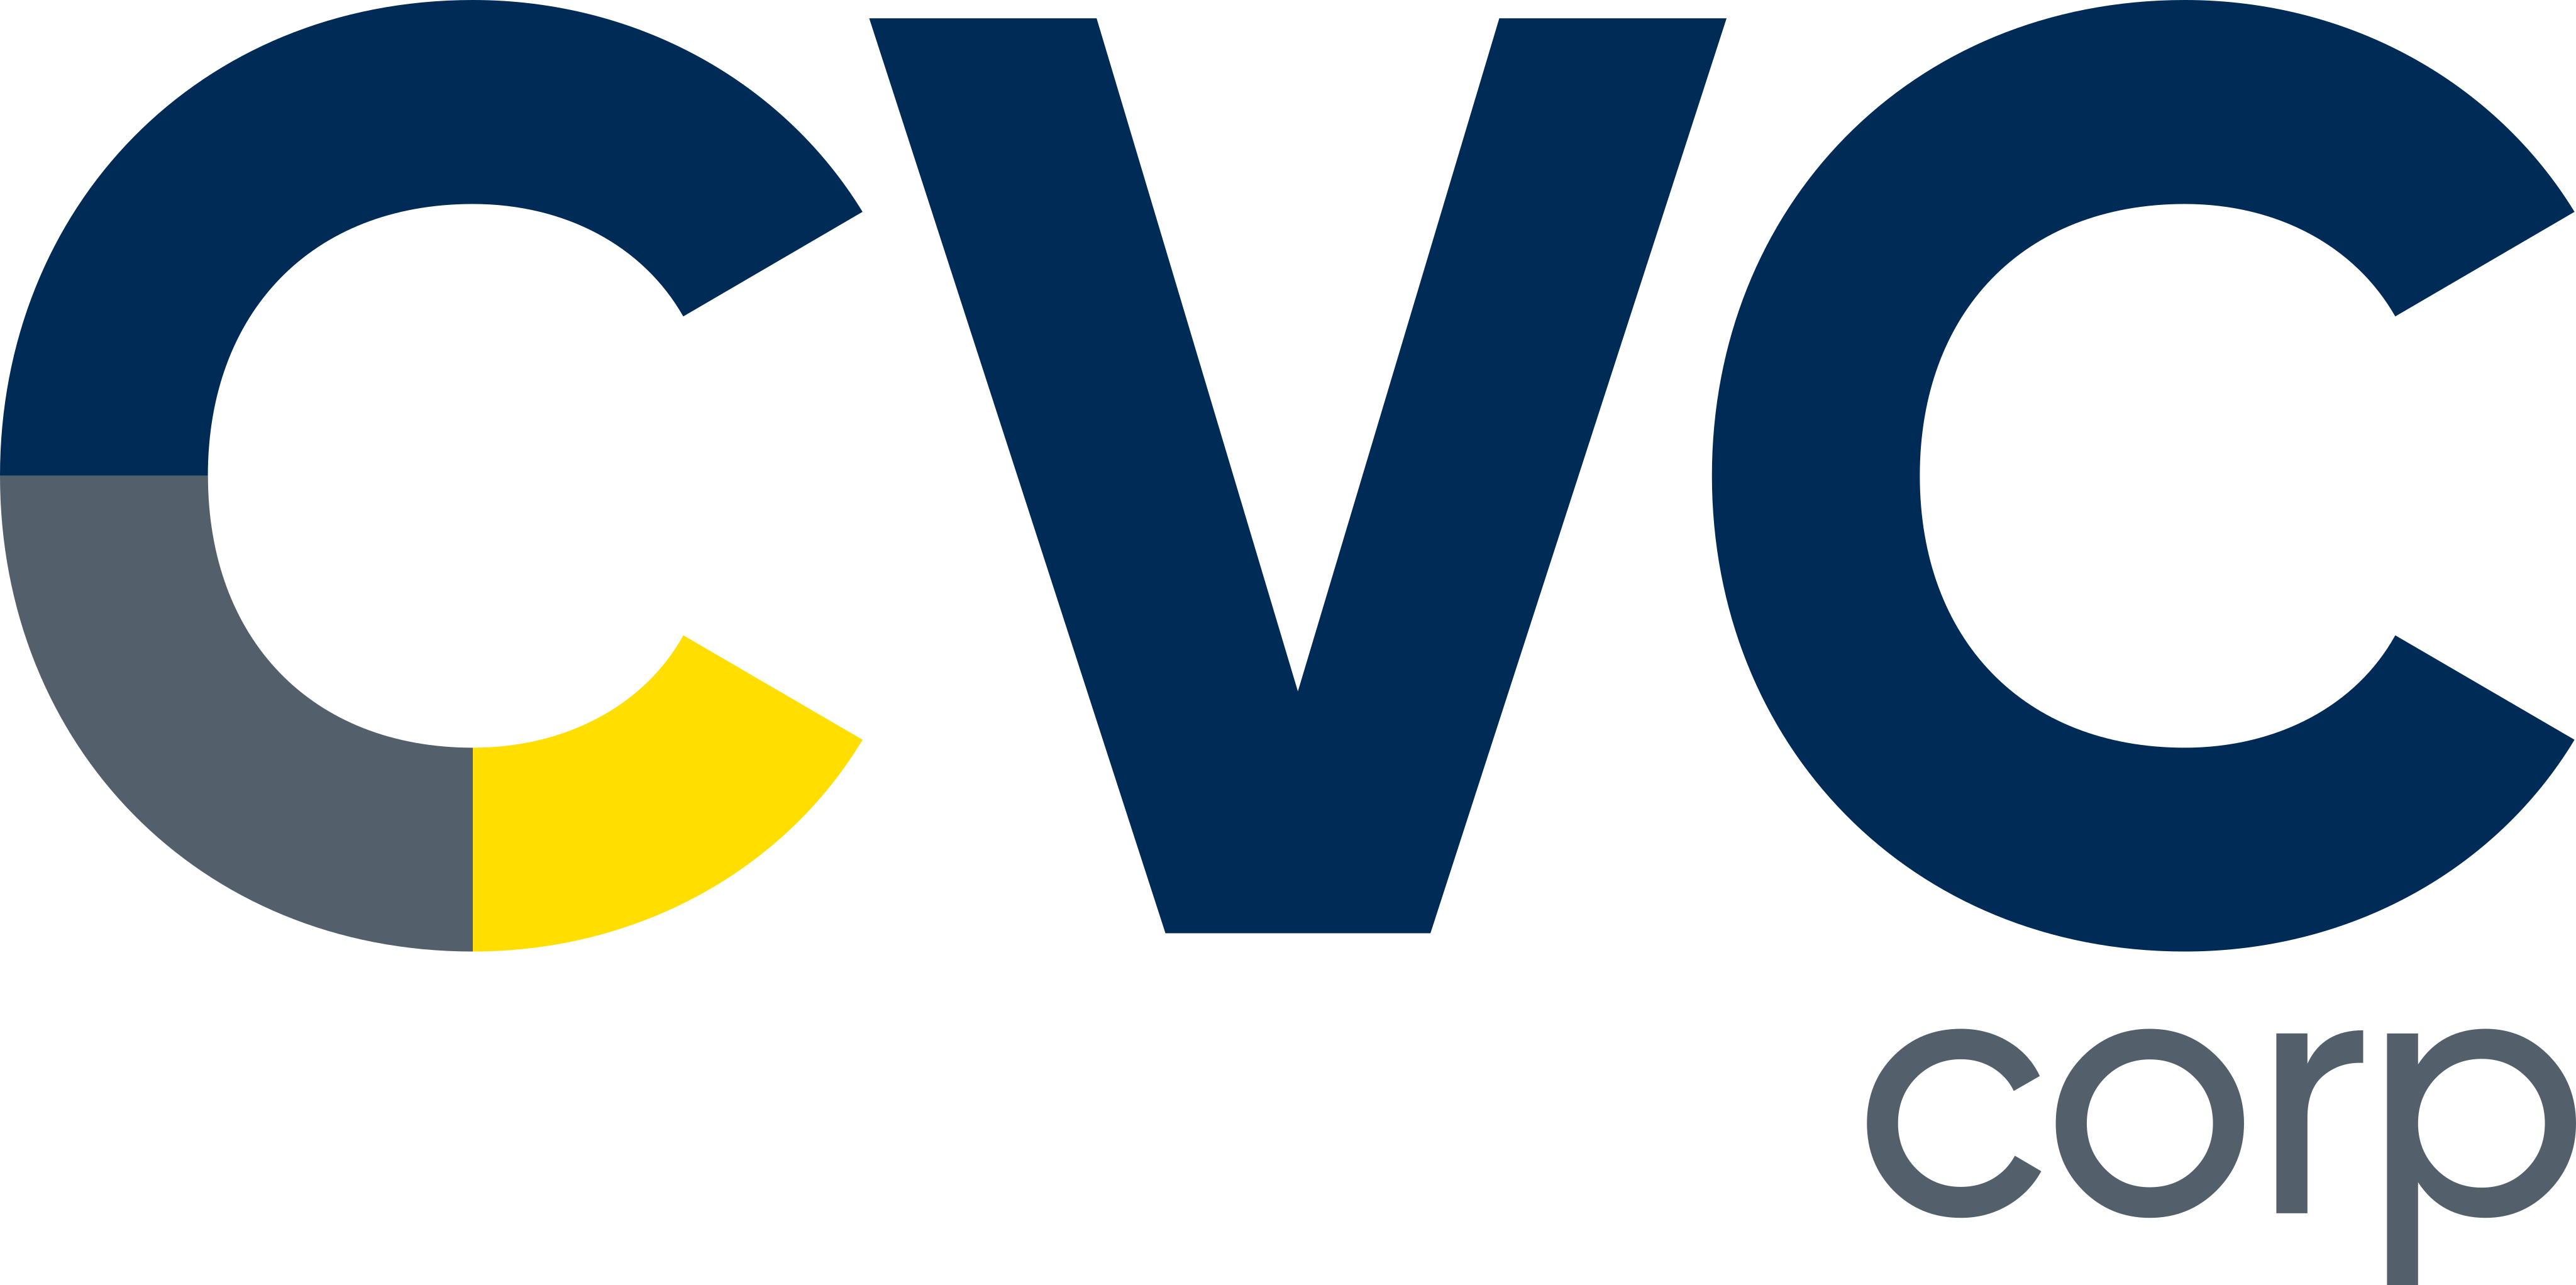 Logotipo da empresa CVC Corp. O nome “CVC” está escrito na cor azul com detalhes em amarelo. Abaixo do “C”, está a palavra “Corp” em cinza.